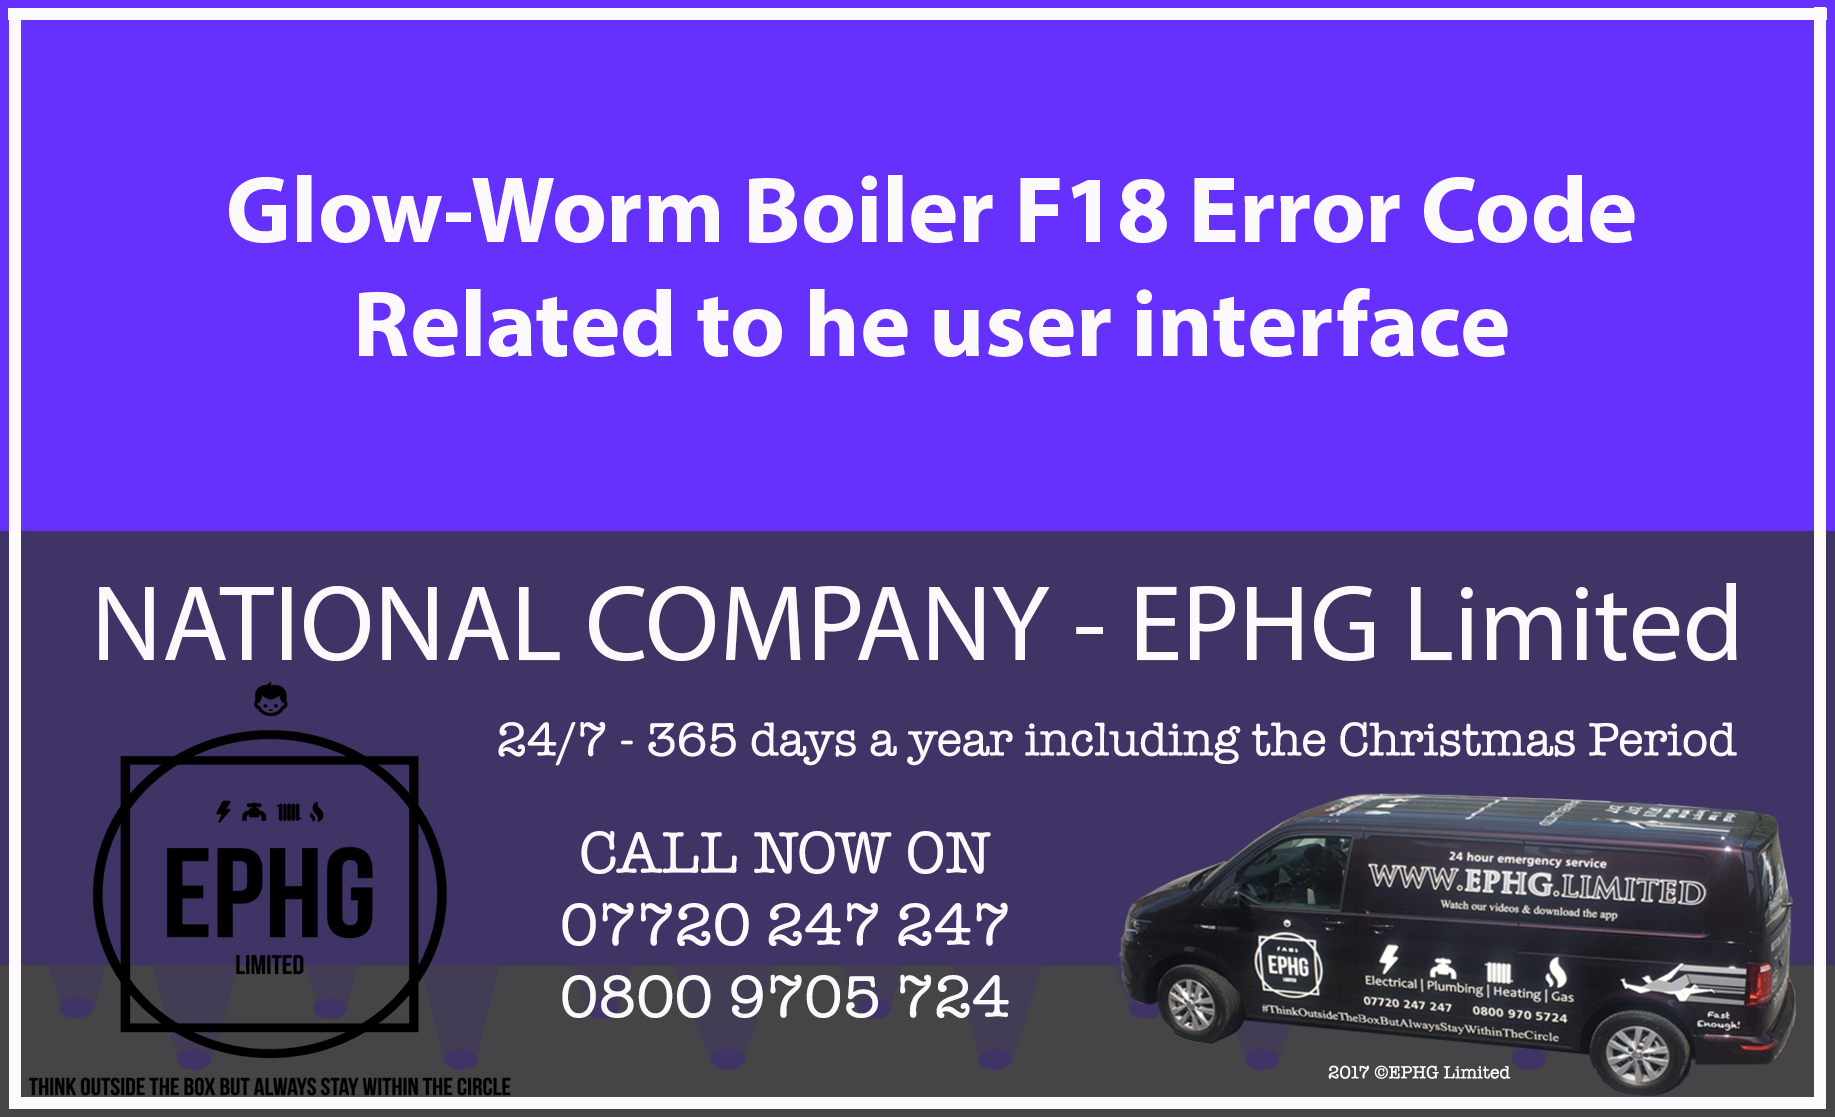 Glow-Worm boiler error code F18